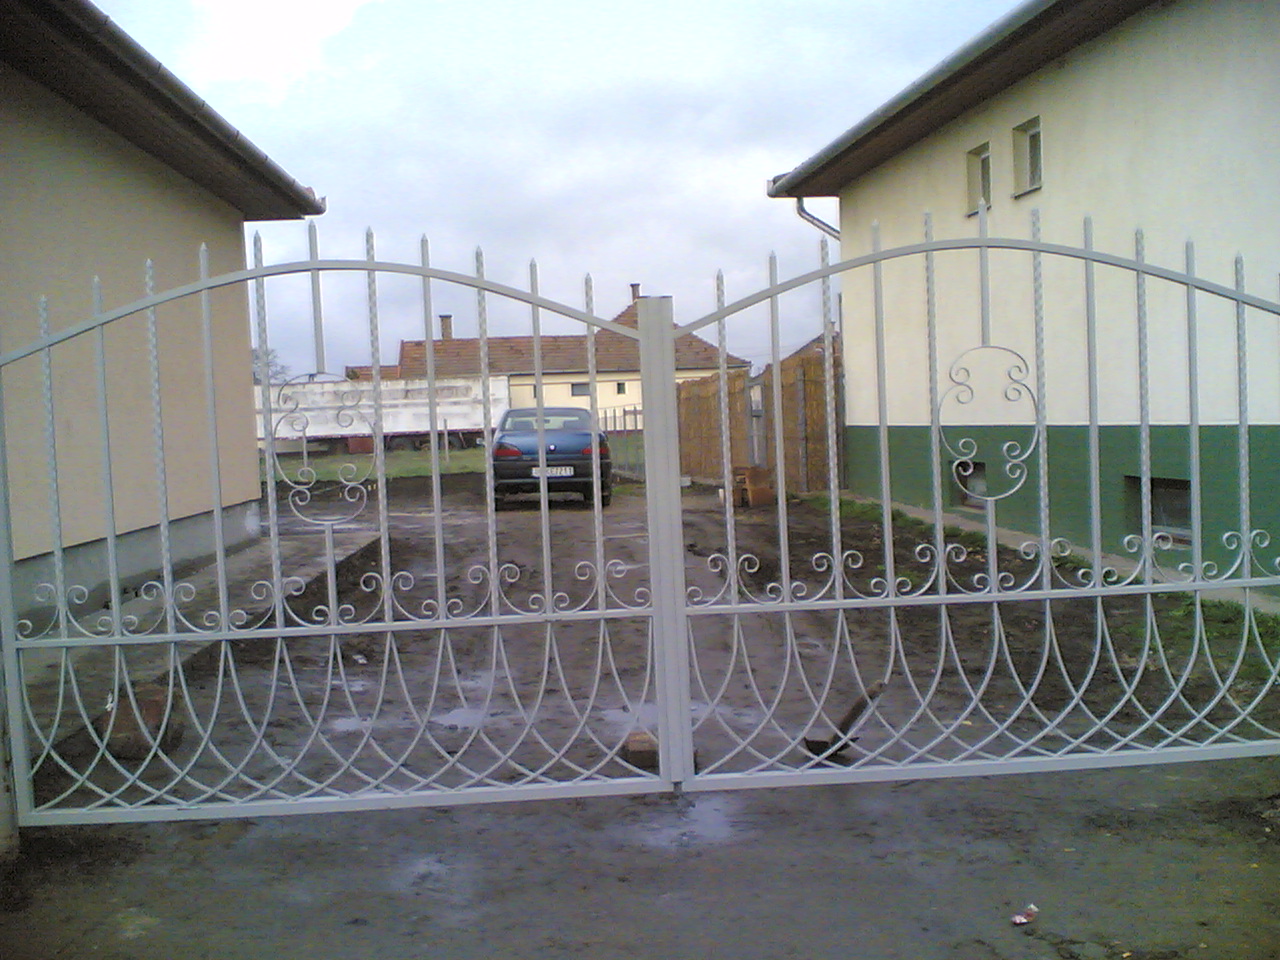 Gate 27